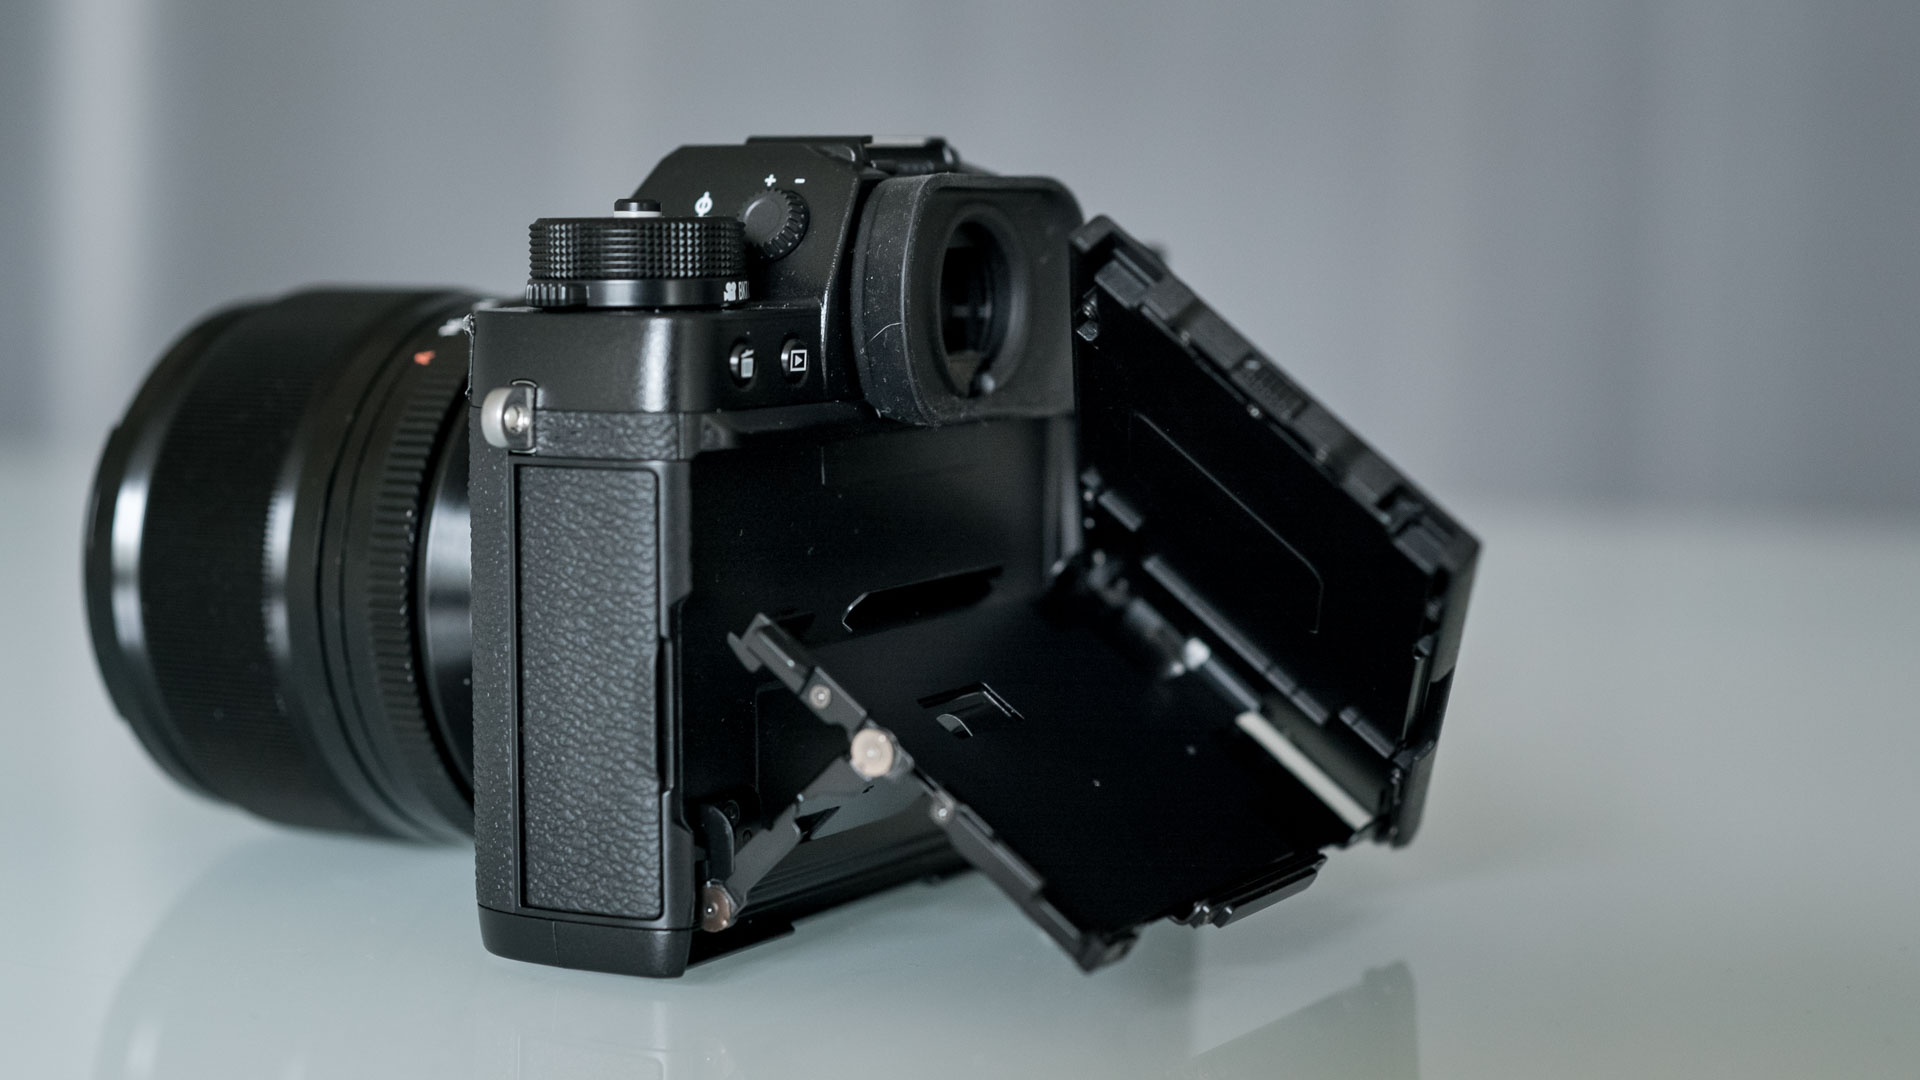 verjaardag Verdampen Profeet FUJIFILM X-T2 vs. Sony a7S II - Which One is the Best Mirrorless Video  Camera? | CineD